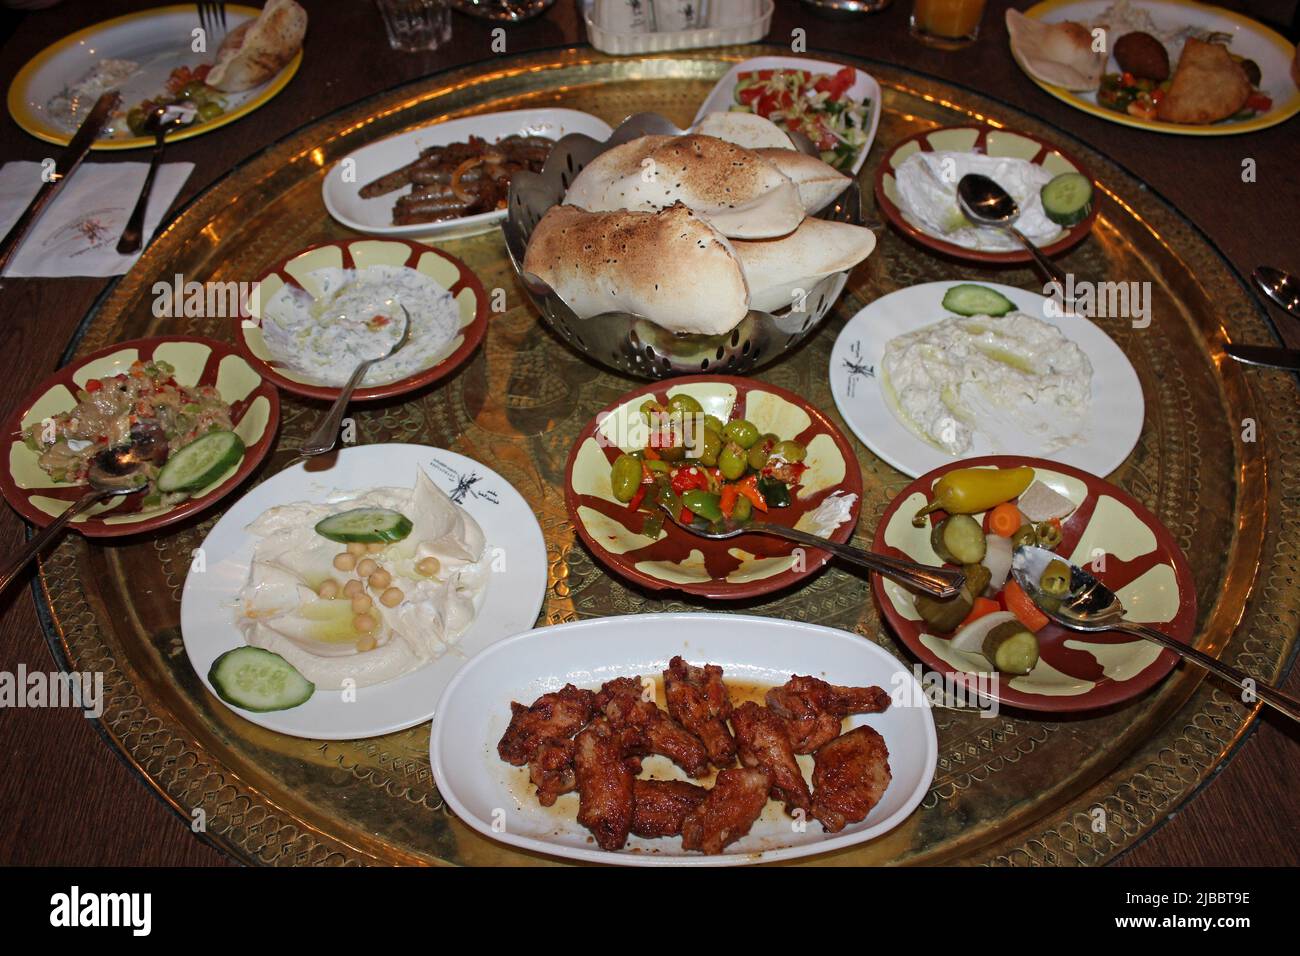 Jordanian Mezze cuisine Stock Photo